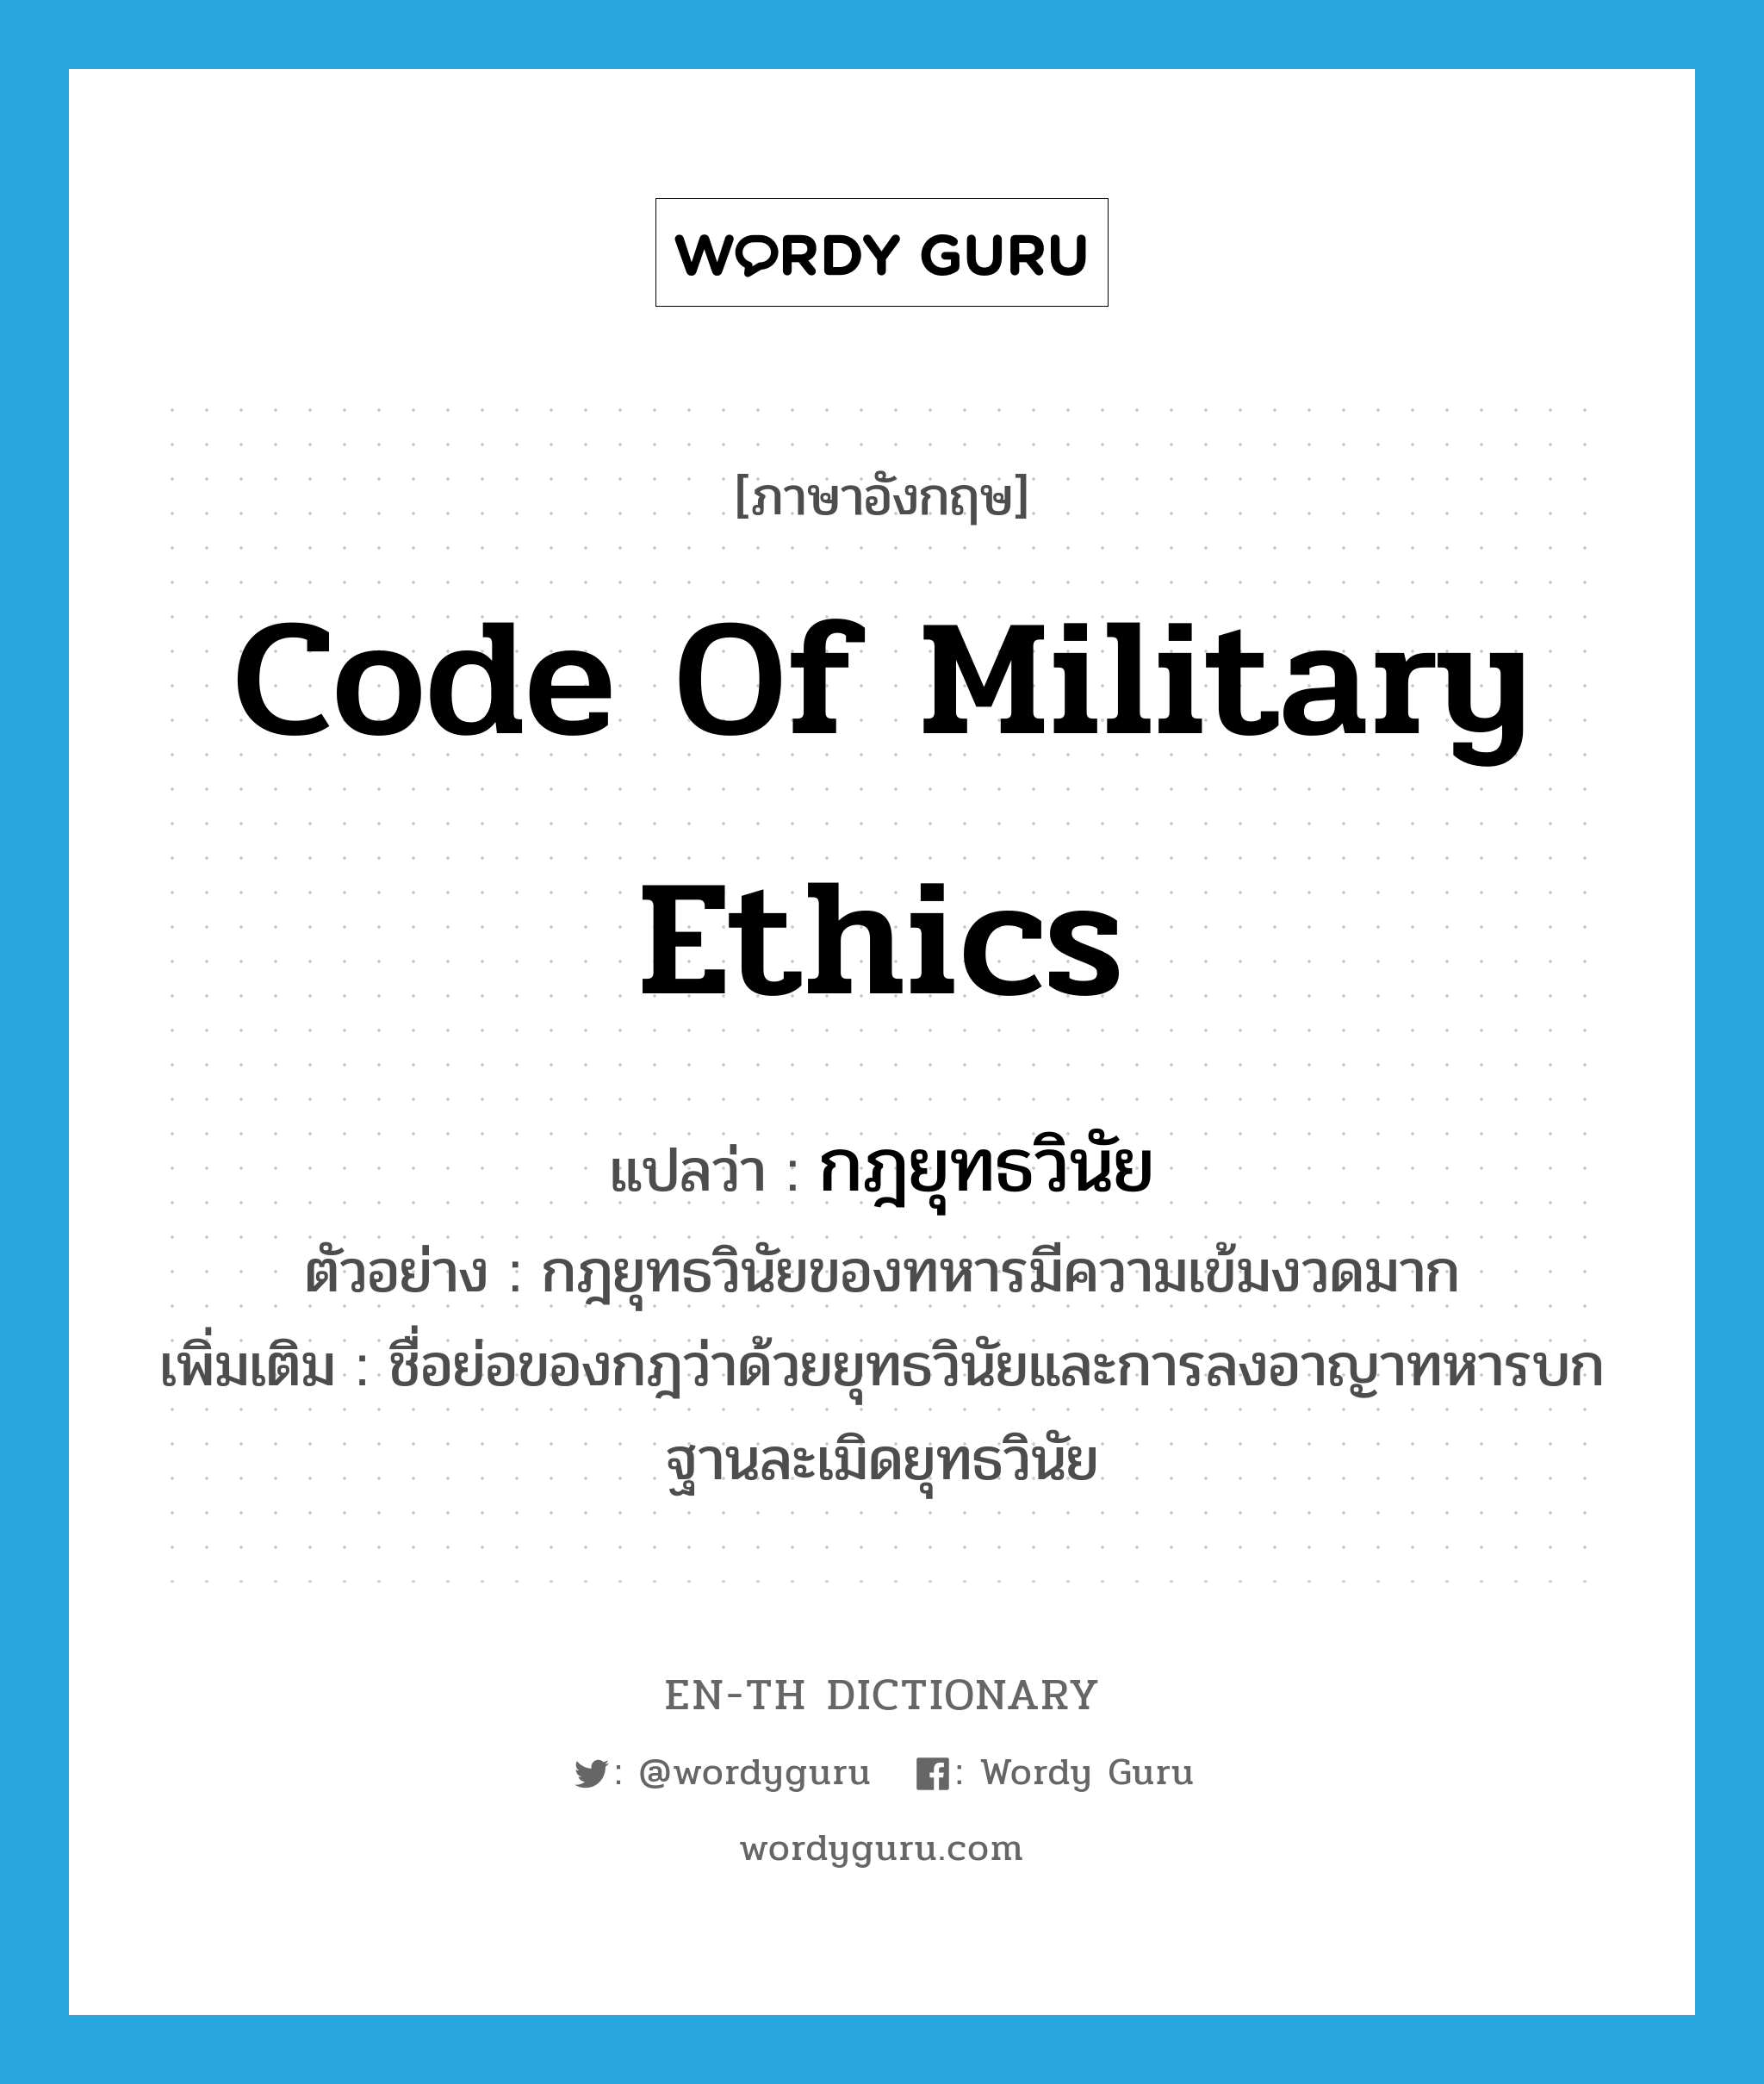 กฎยุทธวินัย ภาษาอังกฤษ?, คำศัพท์ภาษาอังกฤษ กฎยุทธวินัย แปลว่า code of military ethics ประเภท N ตัวอย่าง กฎยุทธวินัยของทหารมีความเข้มงวดมาก เพิ่มเติม ชื่อย่อของกฎว่าด้วยยุทธวินัยและการลงอาญาทหารบกฐานละเมิดยุทธวินัย หมวด N